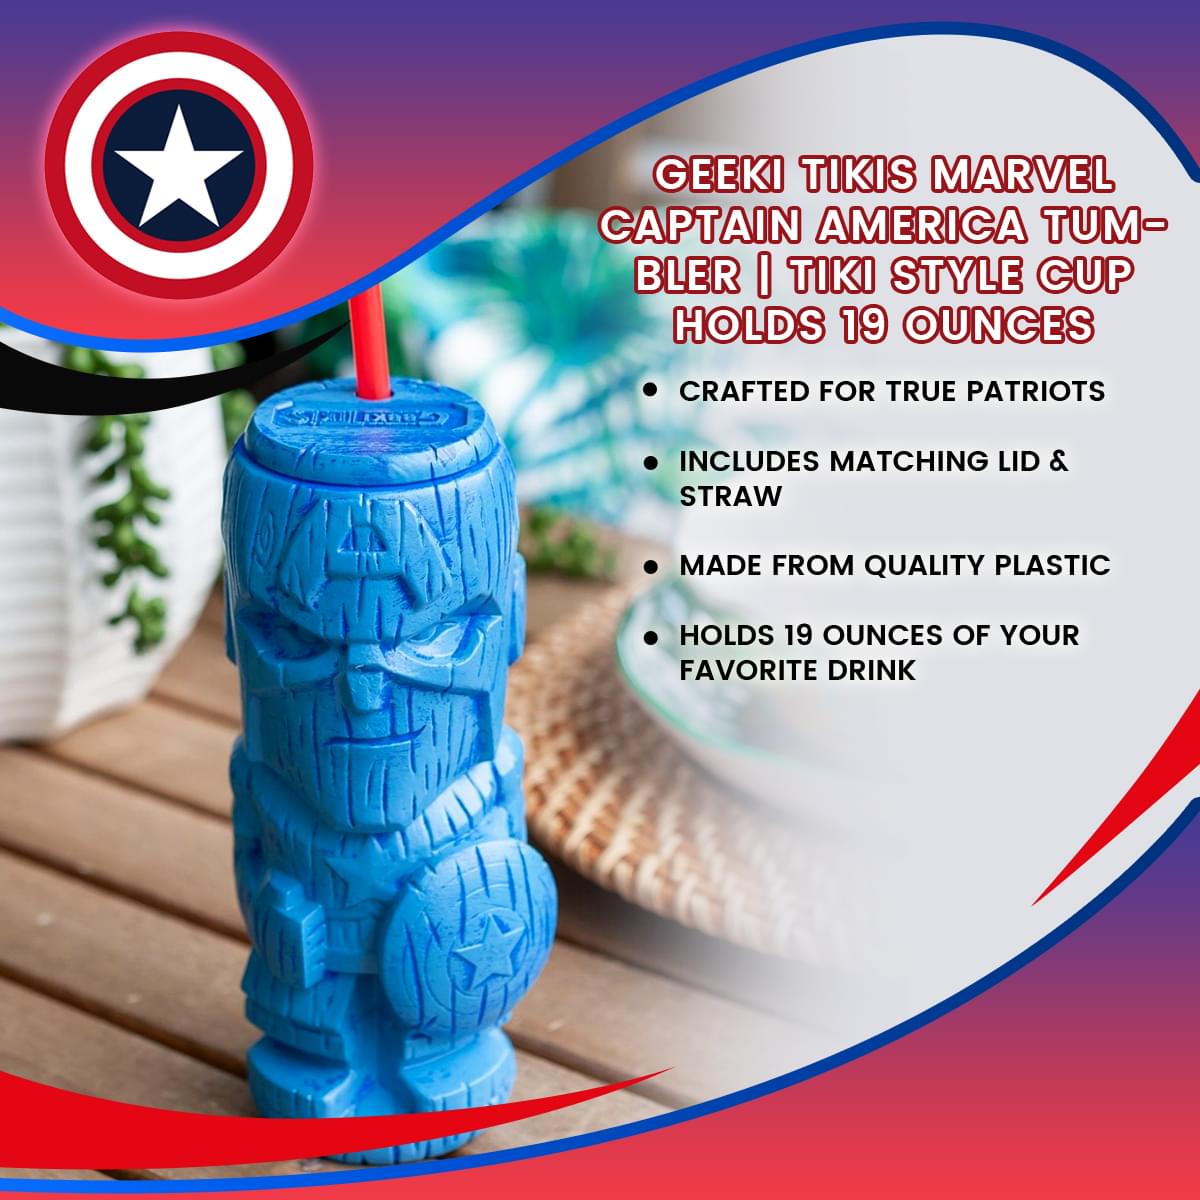 Geeki Tikis Marvel Captain America Tumbler | Tiki Style Cup | Holds 19 Ounces